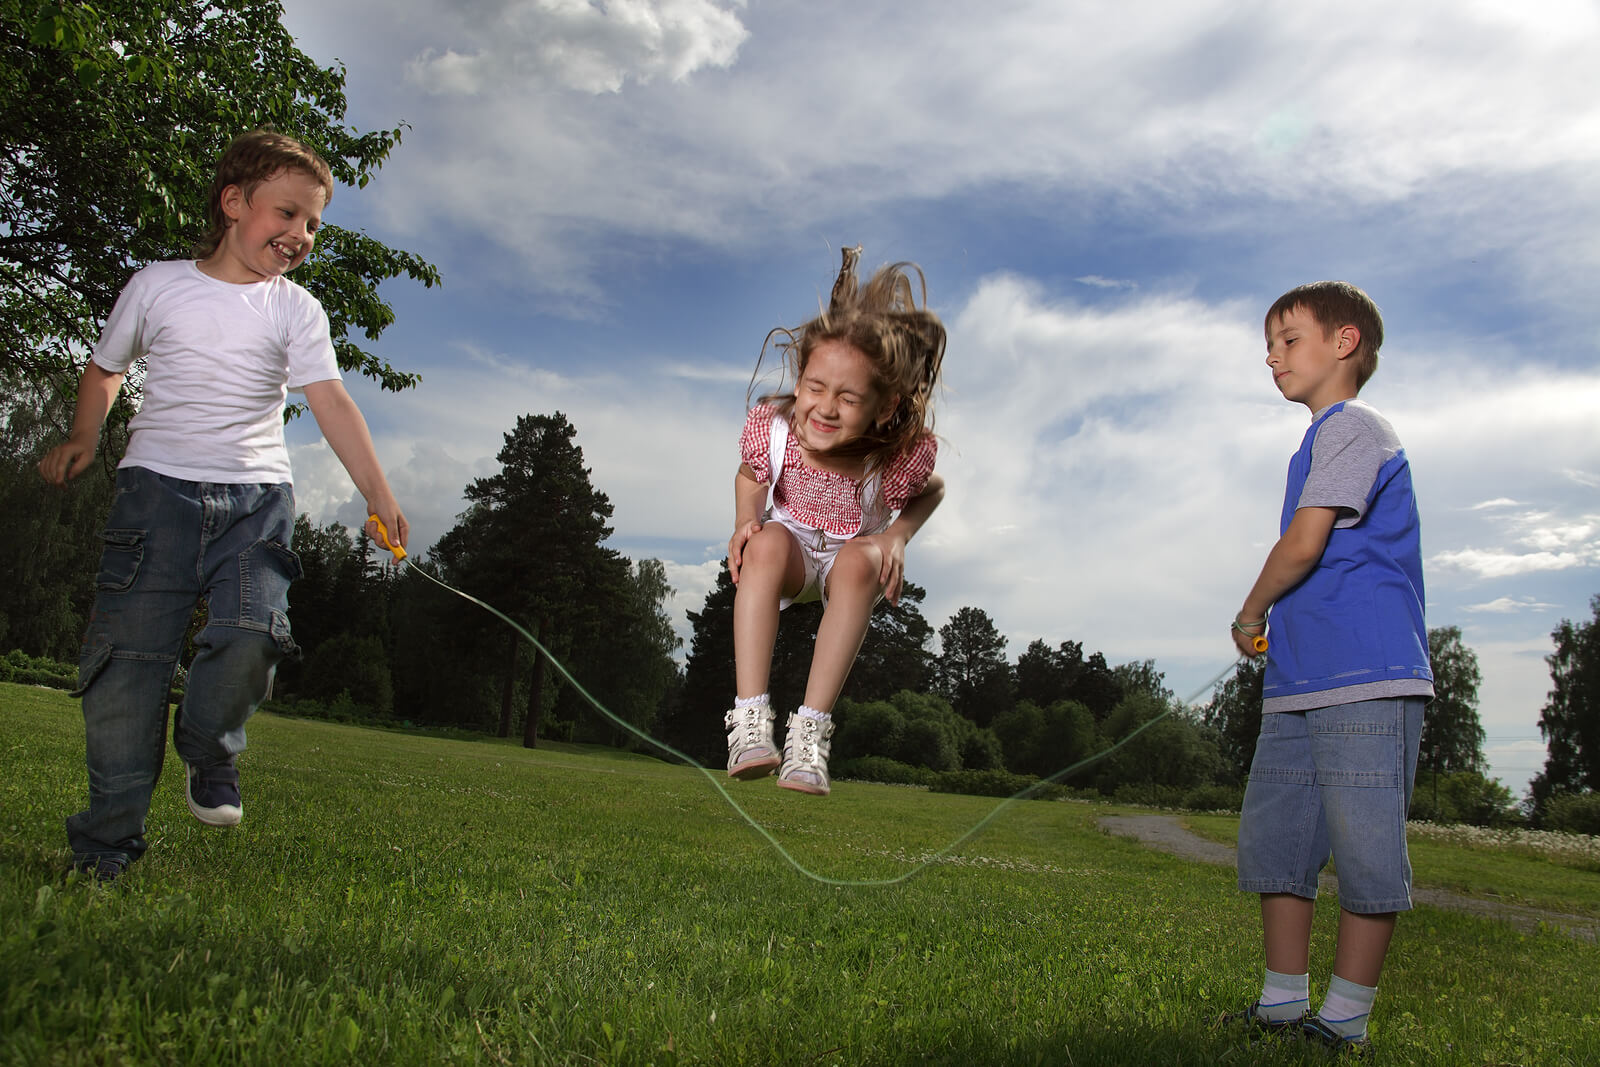 Crianças pulando corda, uma das atividades livres mais fáceis de fazer.